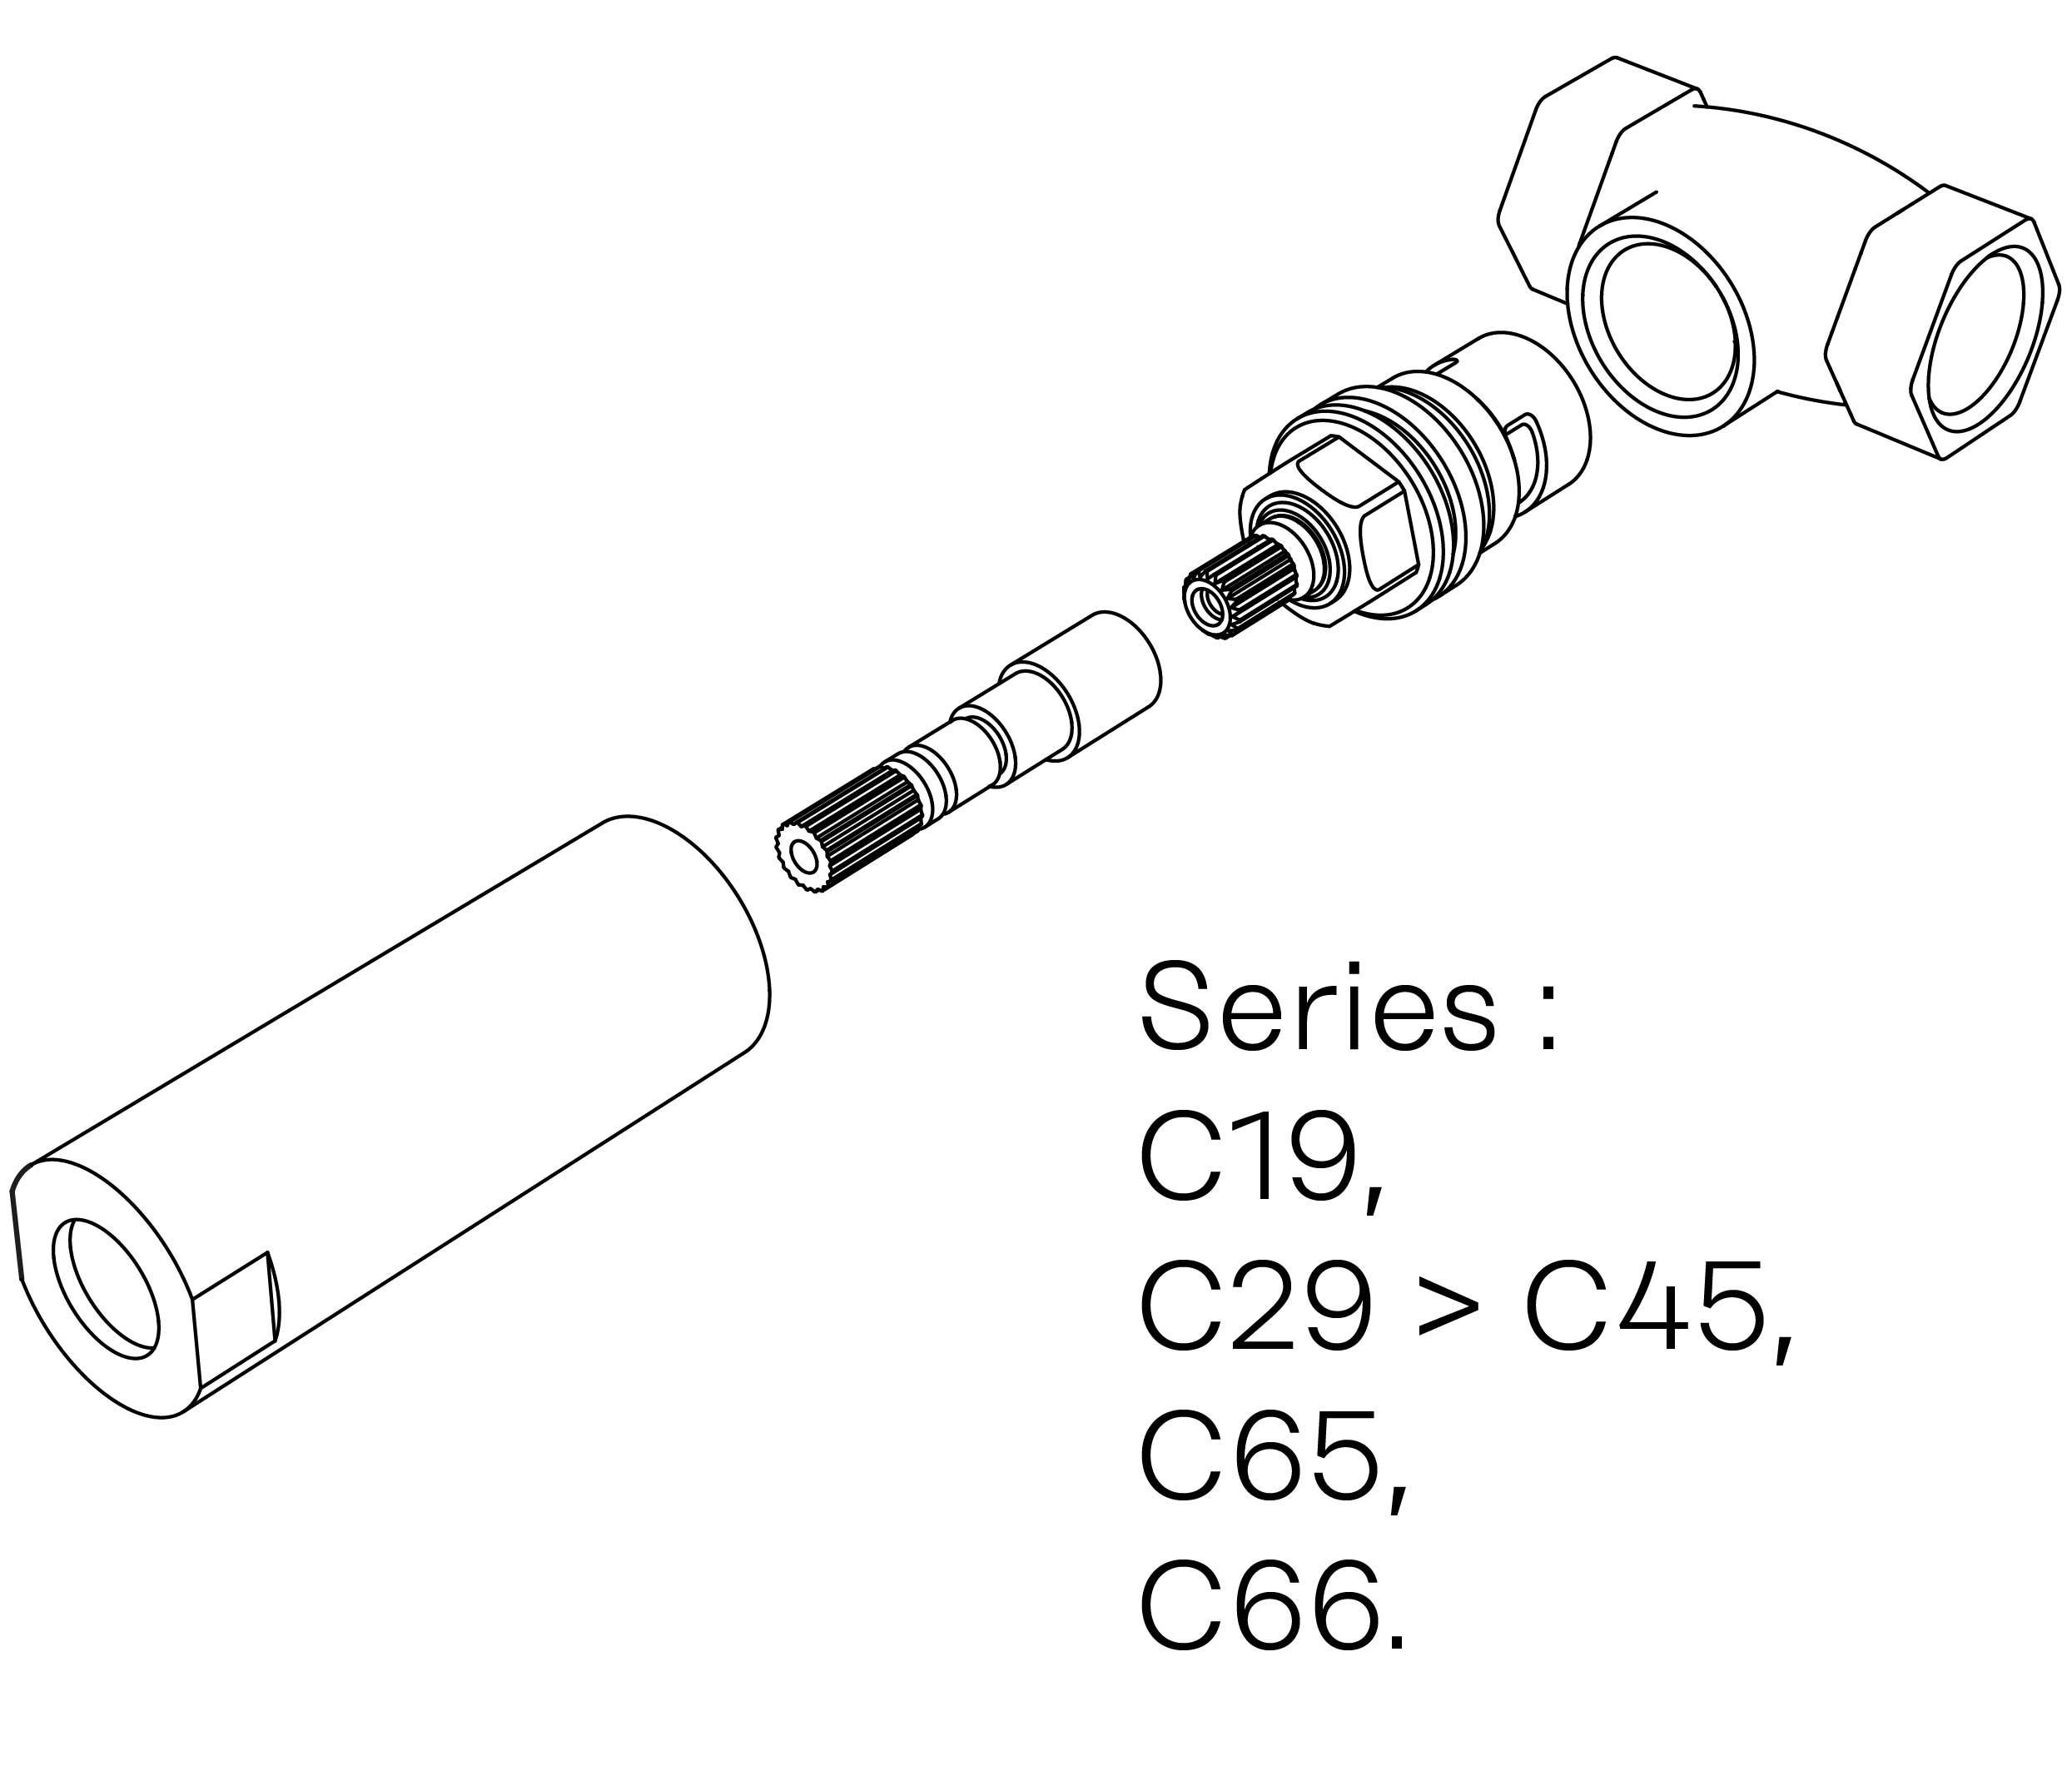 C00-23K28H Kit #3 for W-M valve 1/2″, 1/4 turn, Left